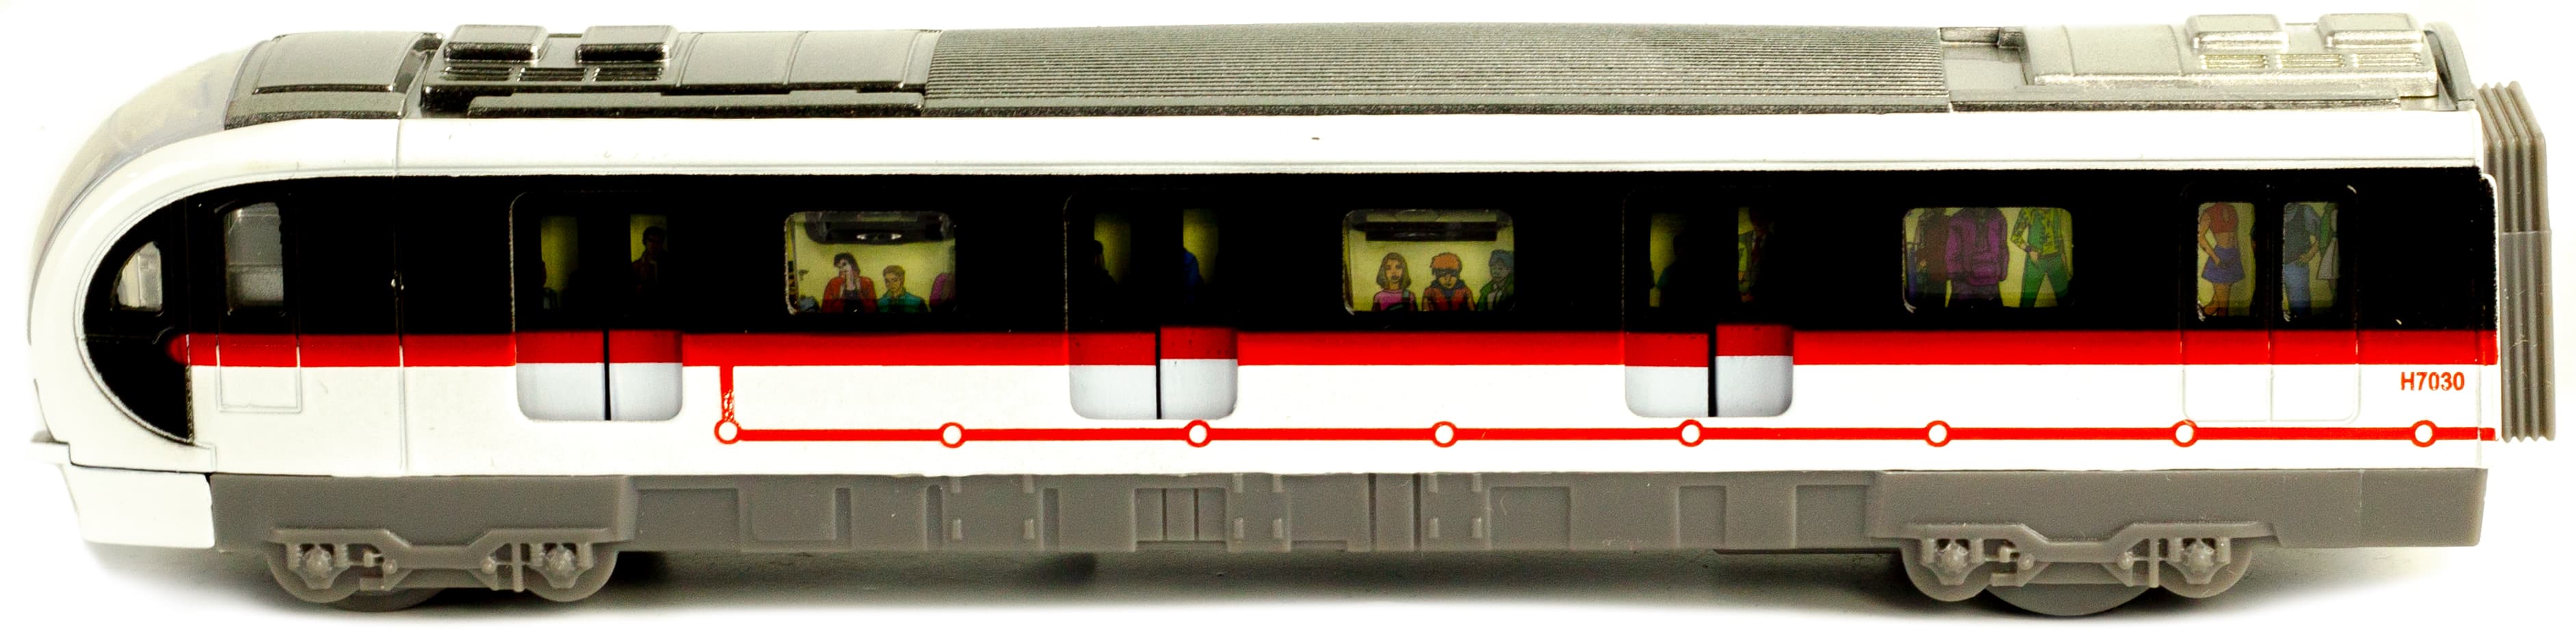 Металлический Метропоезд 1:43 Sonic City Subway 7030, 18,5 см. (открываются двери, звук, свет) / Микс